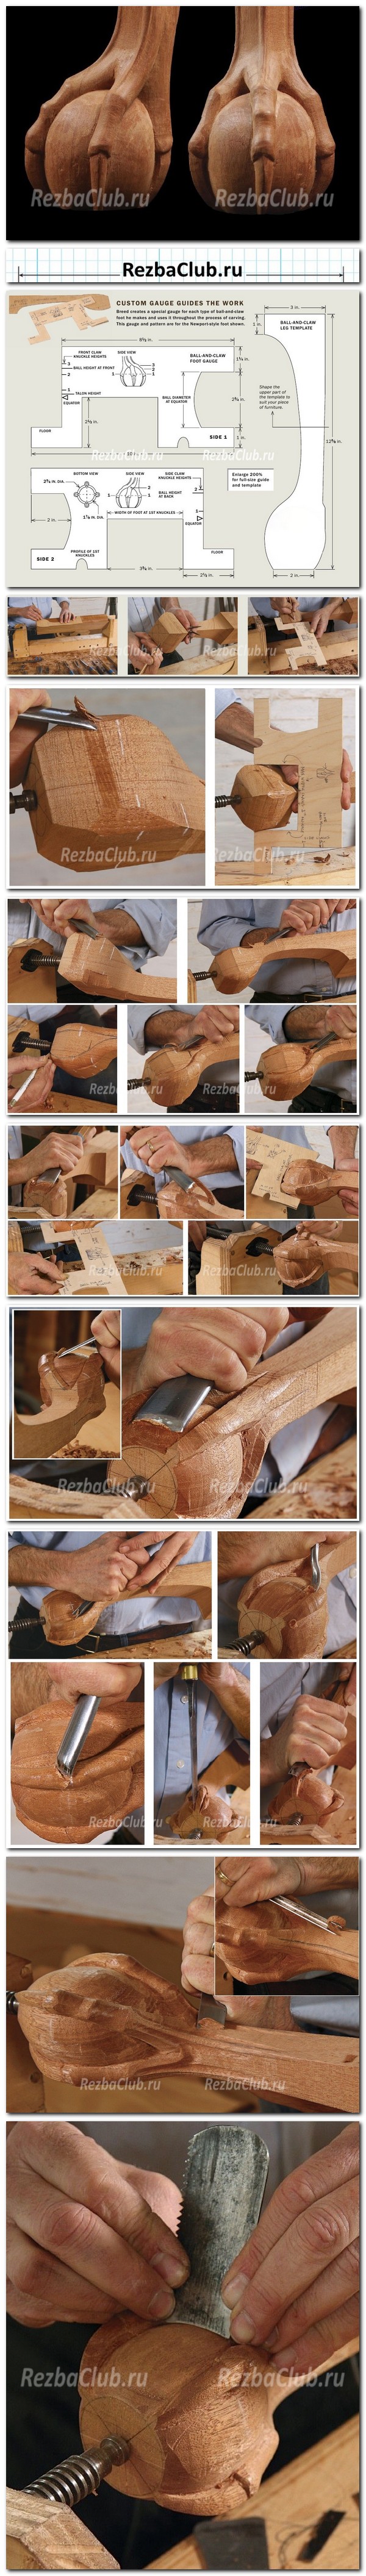 Плакат как вырезать ножку для мебели в форме лапы птицы опирающейся на шар